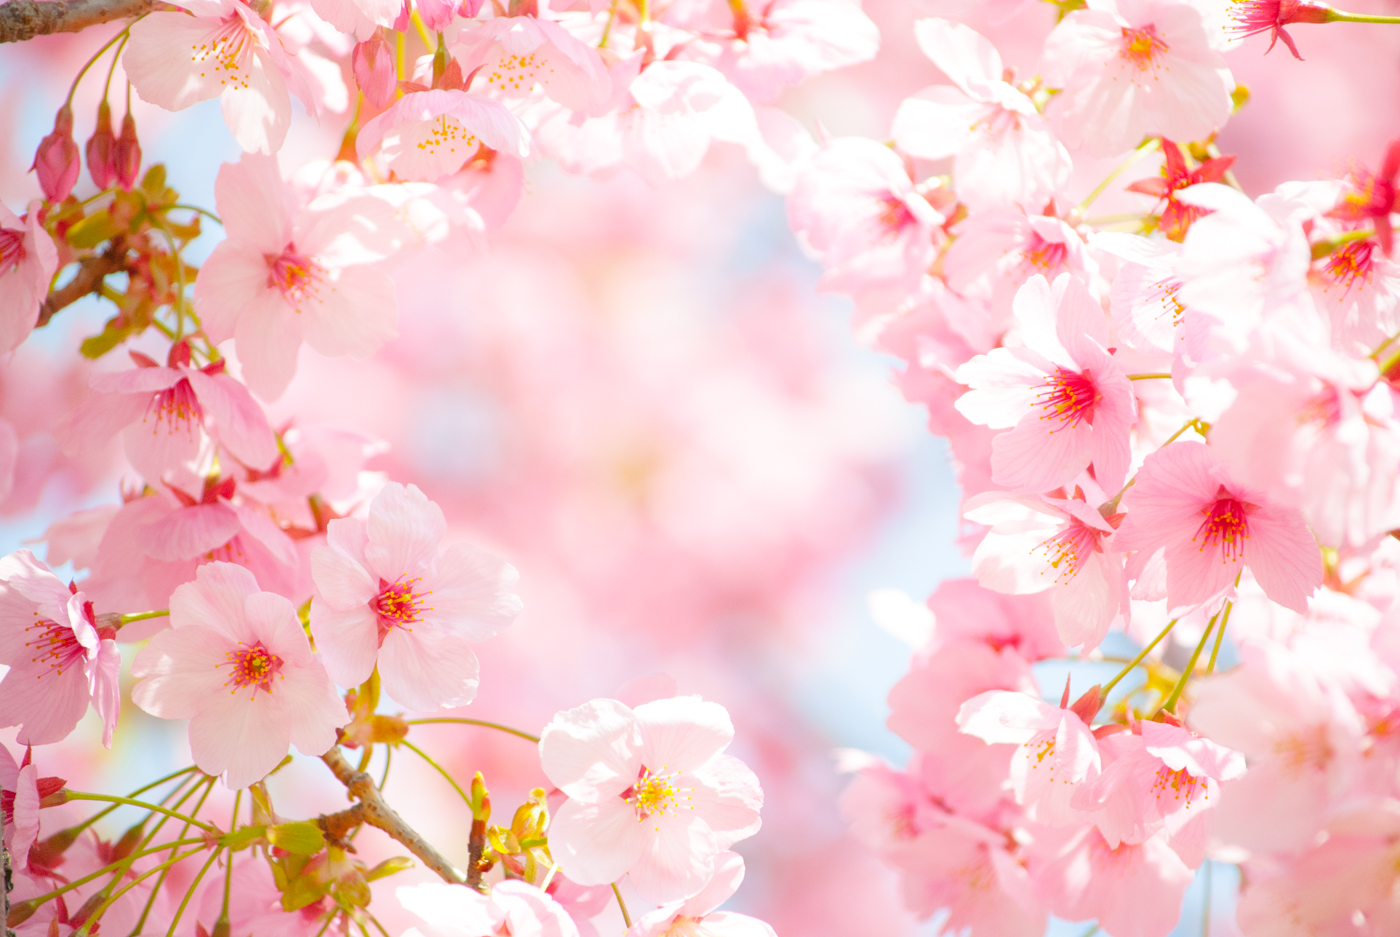 春爛漫 桜スィーツナイト開催 人気占い師による開運セミナーと春色スィーツブッフェ 株式会社ポジティブドリームパーソンズのプレスリリース